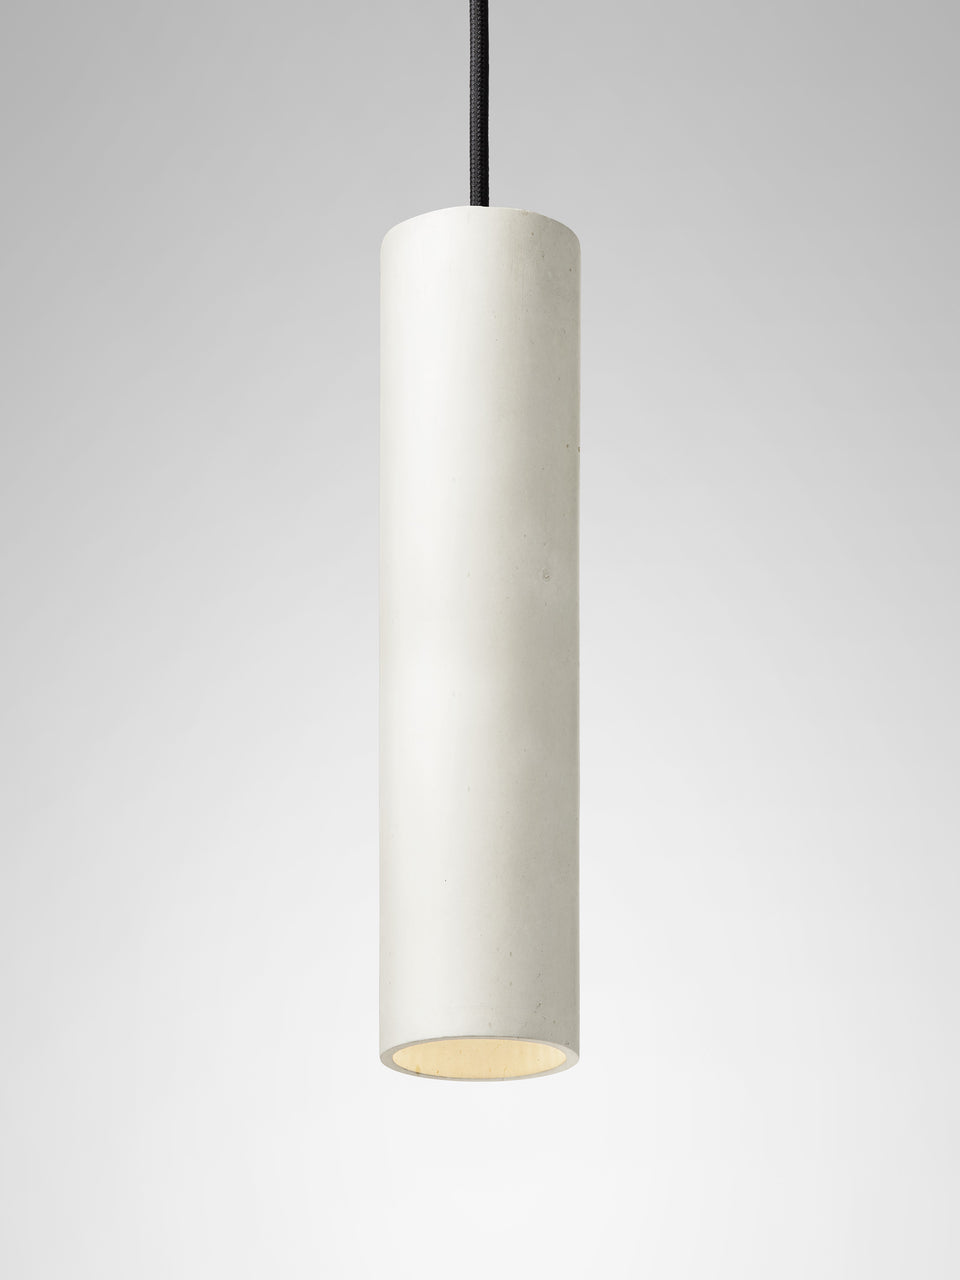 Cromia pendant lamp 28 cm